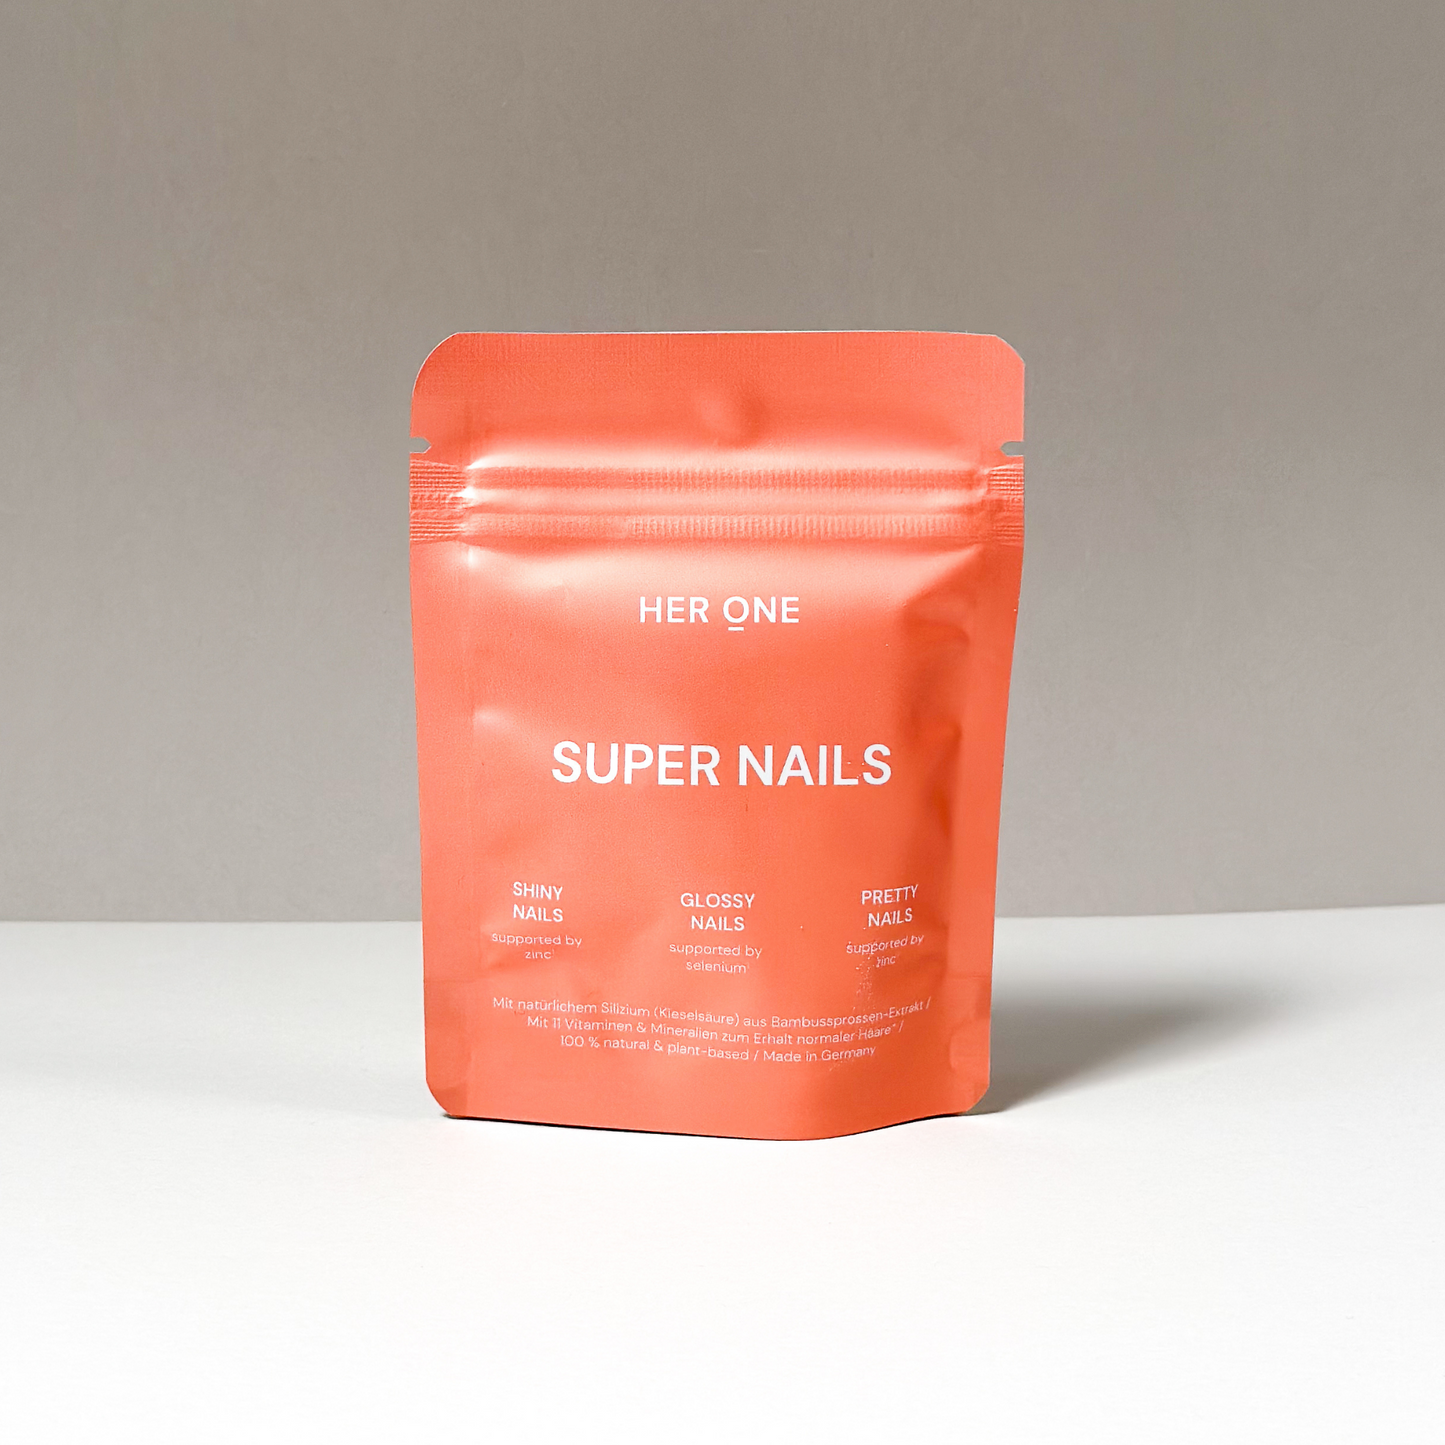 SUPER NAILS (mit Silizium & Bambussprossen-Extrakt)